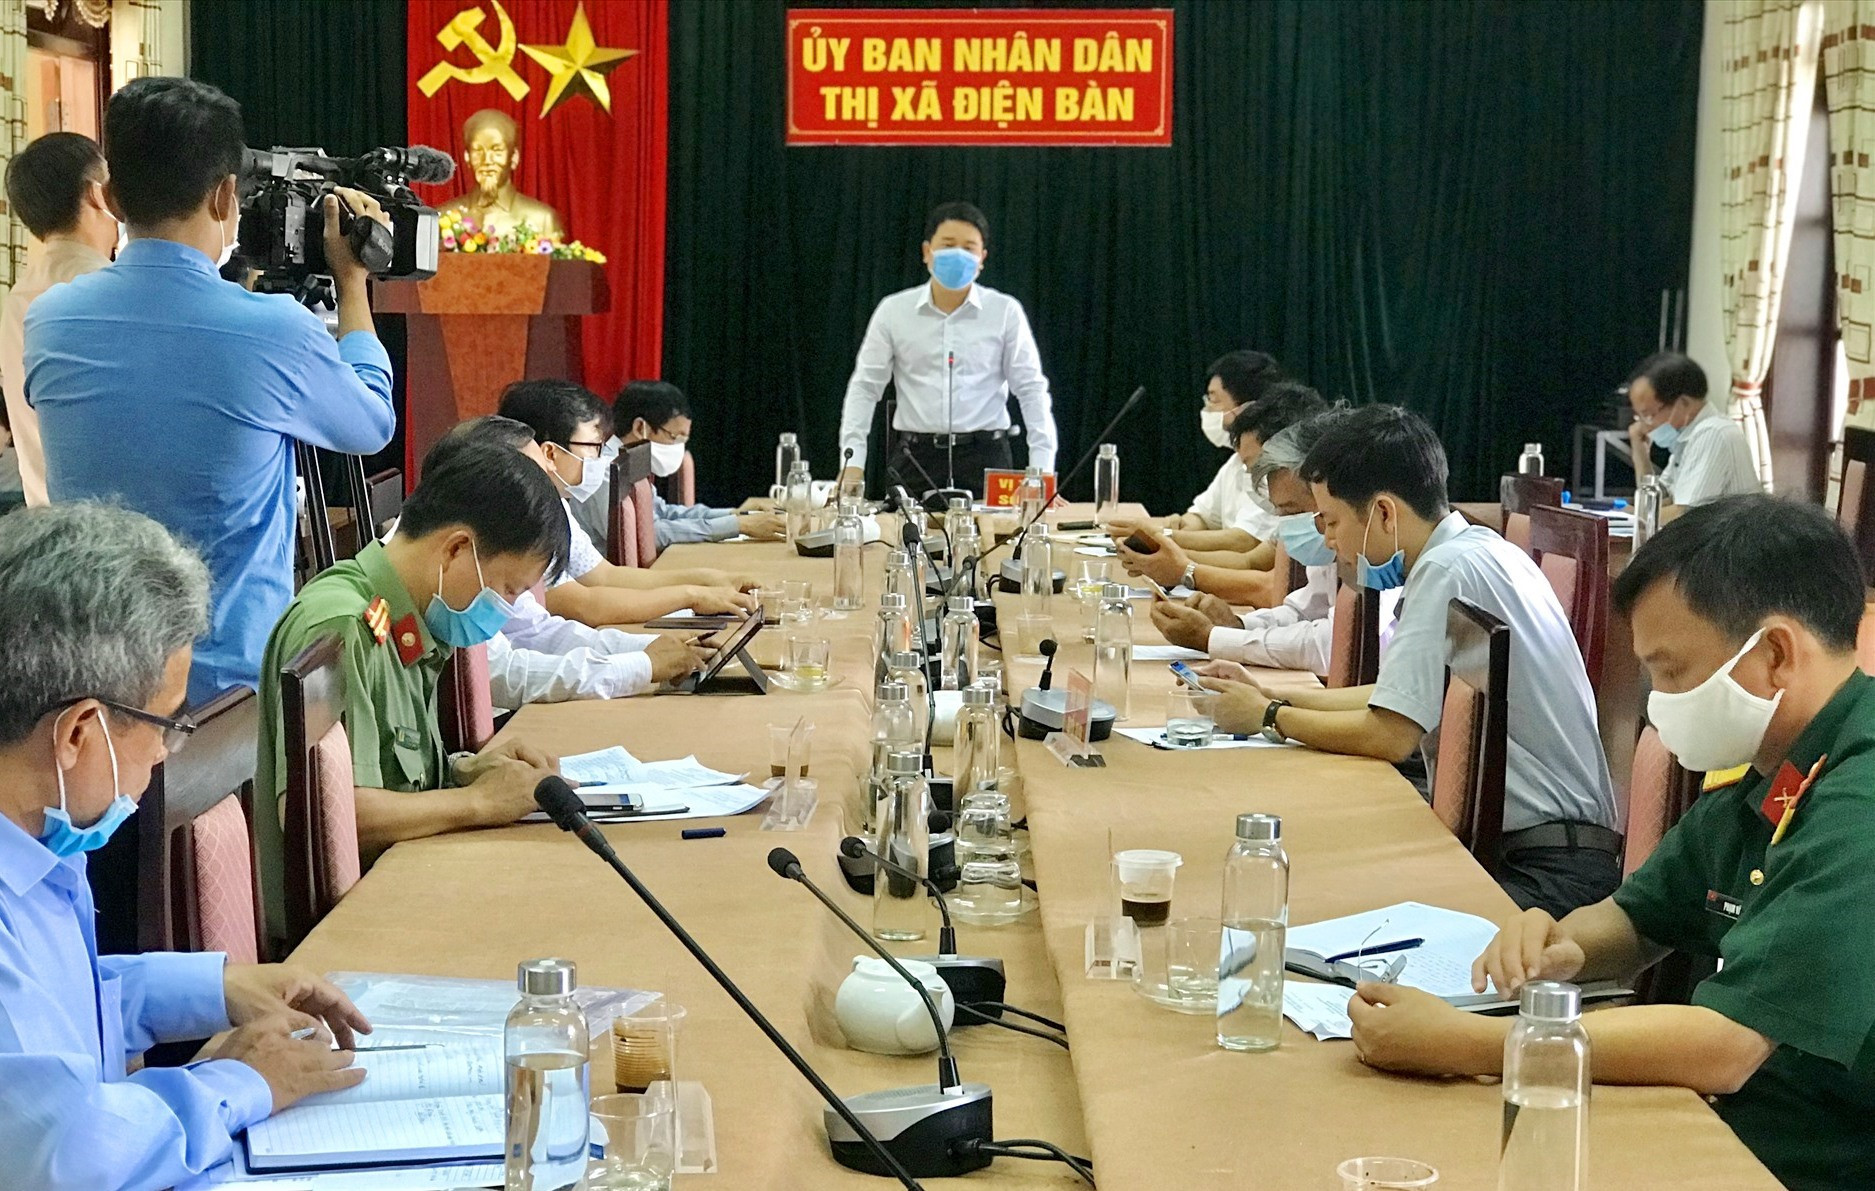 Phó Chủ tịch UBND tỉnh Trần Văn Tân chủ trì buổi làm việc về phòng, chống dịch Covid-19 tại Điện Bàn. Ảnh: Q.T